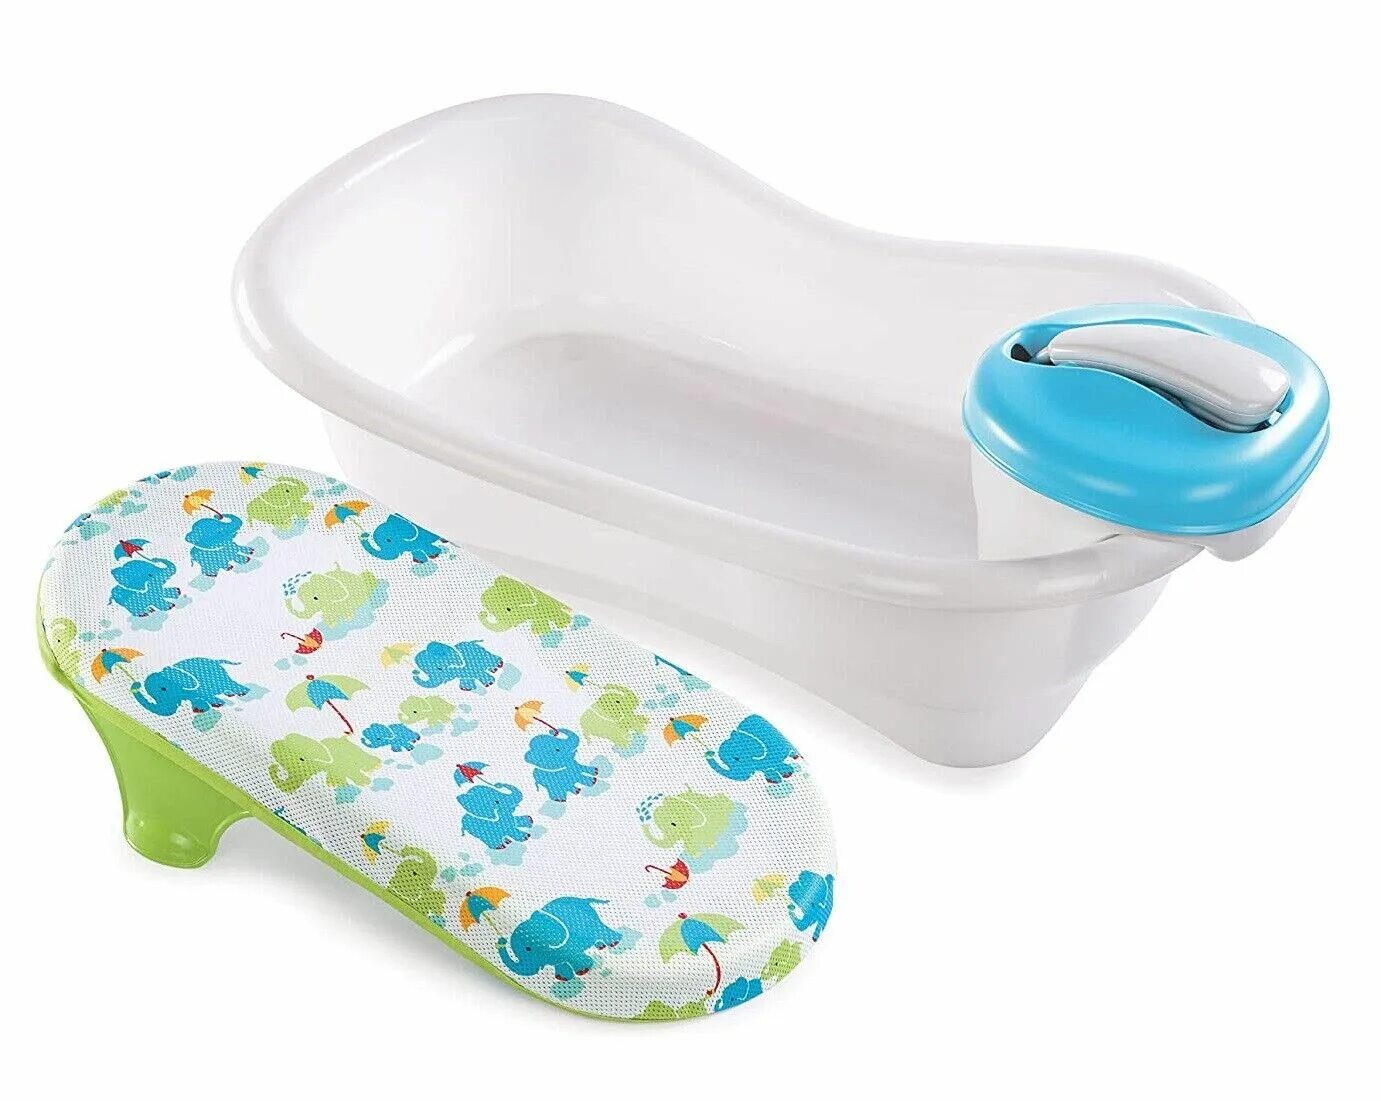 Подставка для ванной для детей. Ванночка Хэппи бэби для новорожденных. Подставка для купания новорожденных в ванну. Подставка в ванночку для новорожденного. Ванна с горкой для новорожденных.